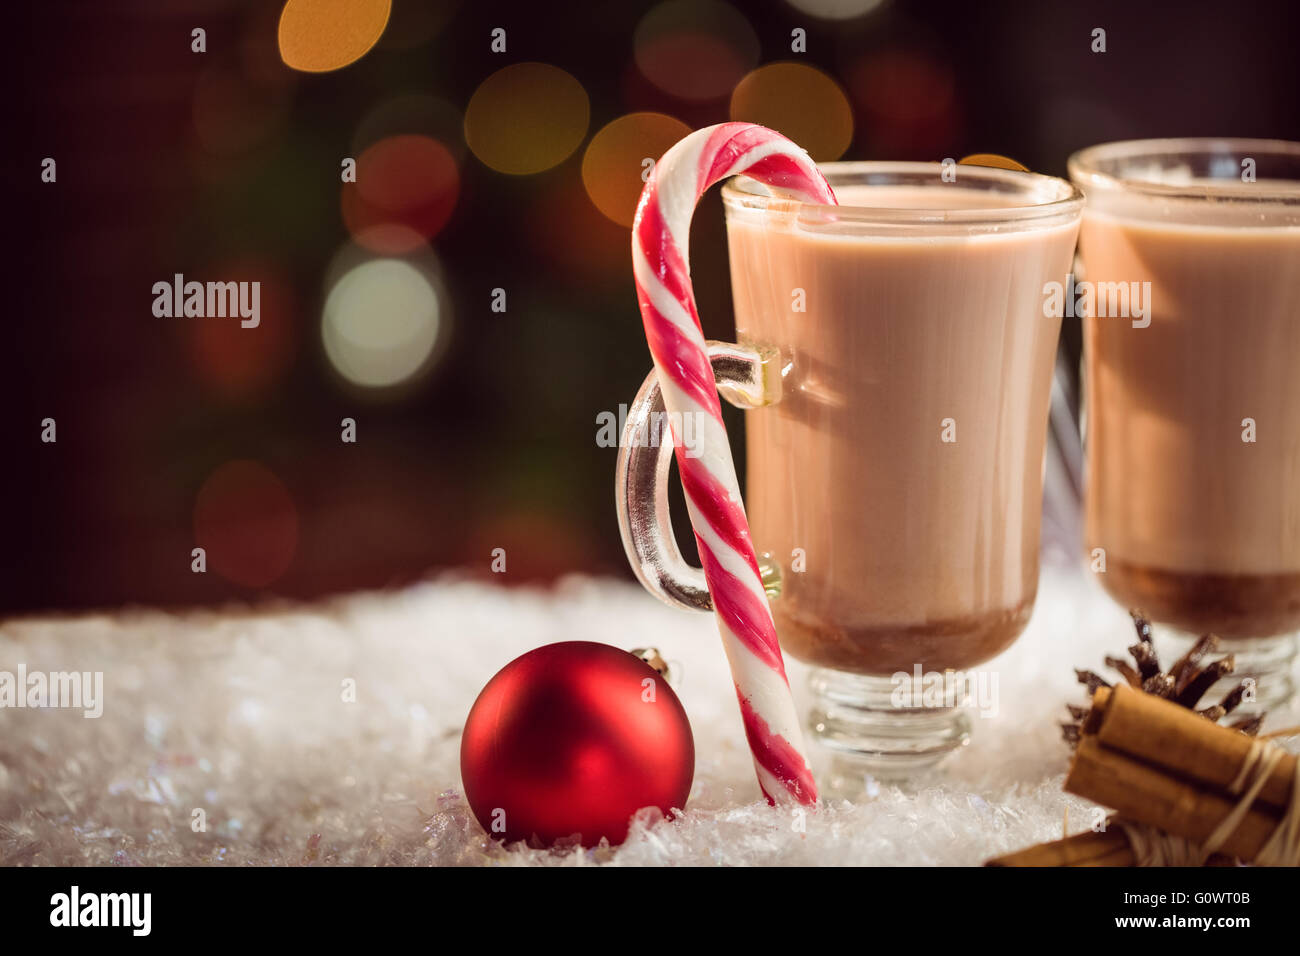 L'extrême vue rapprochée de l'image composite de chocolats chauds Banque D'Images